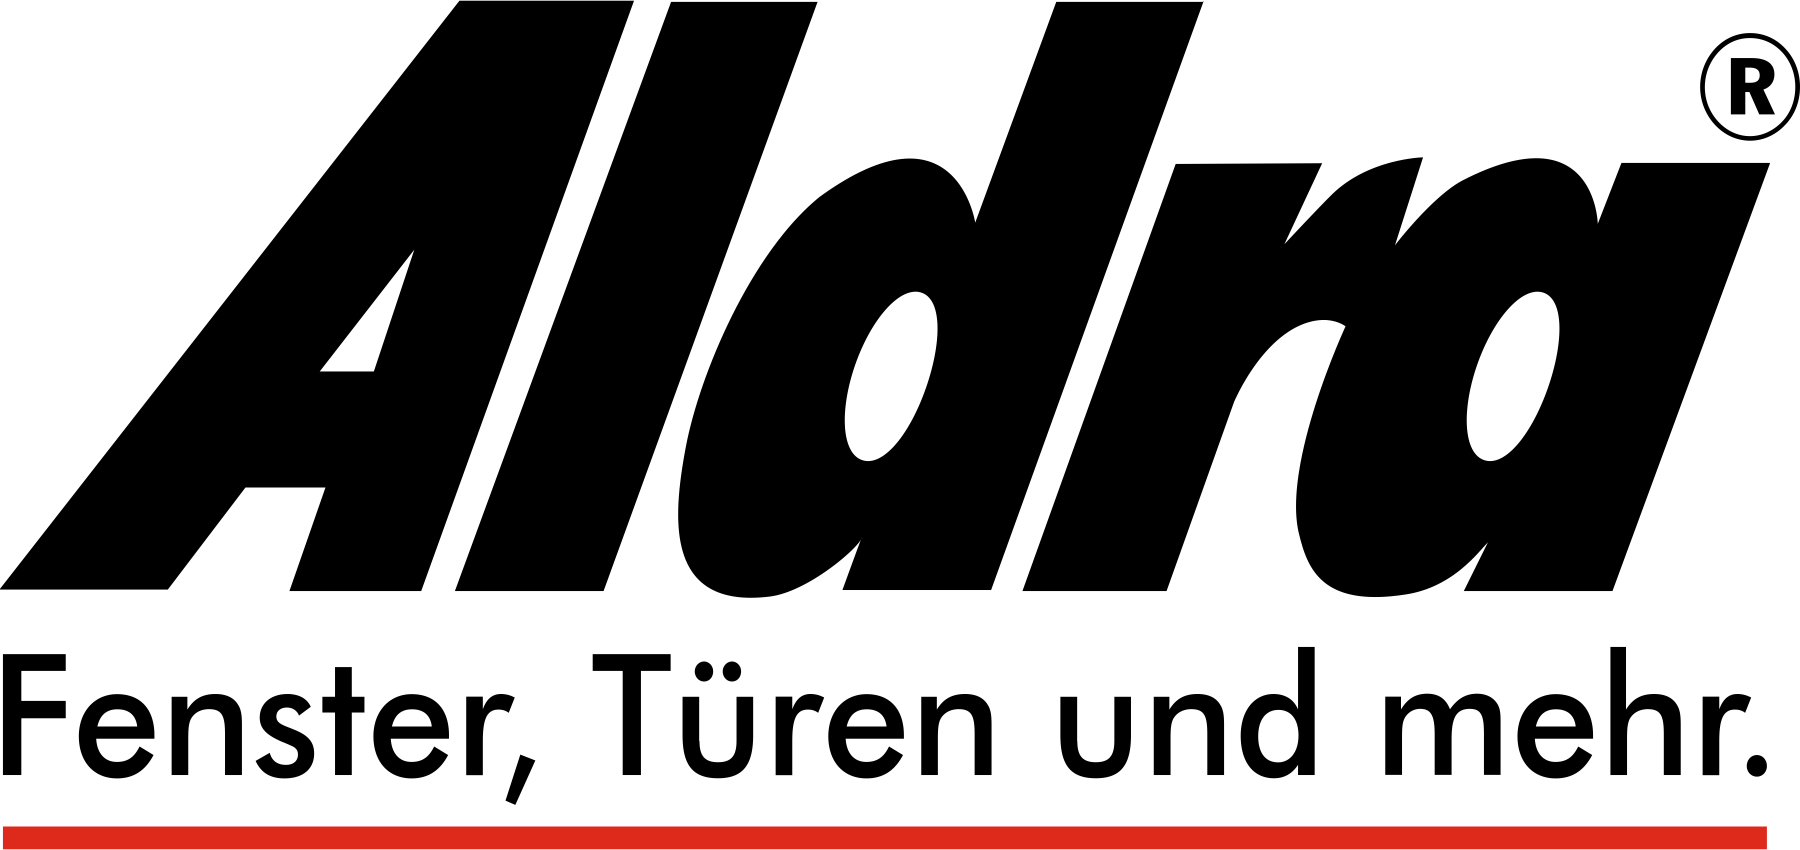 Das Aldra Logo in schwarzer Schrift und dem Slogan Fenster, Türen und mehr. Aldra ist ein weitererLieferant für Holzfenster und Holz-Aluminium-Fenster von Rolladen Kessler.